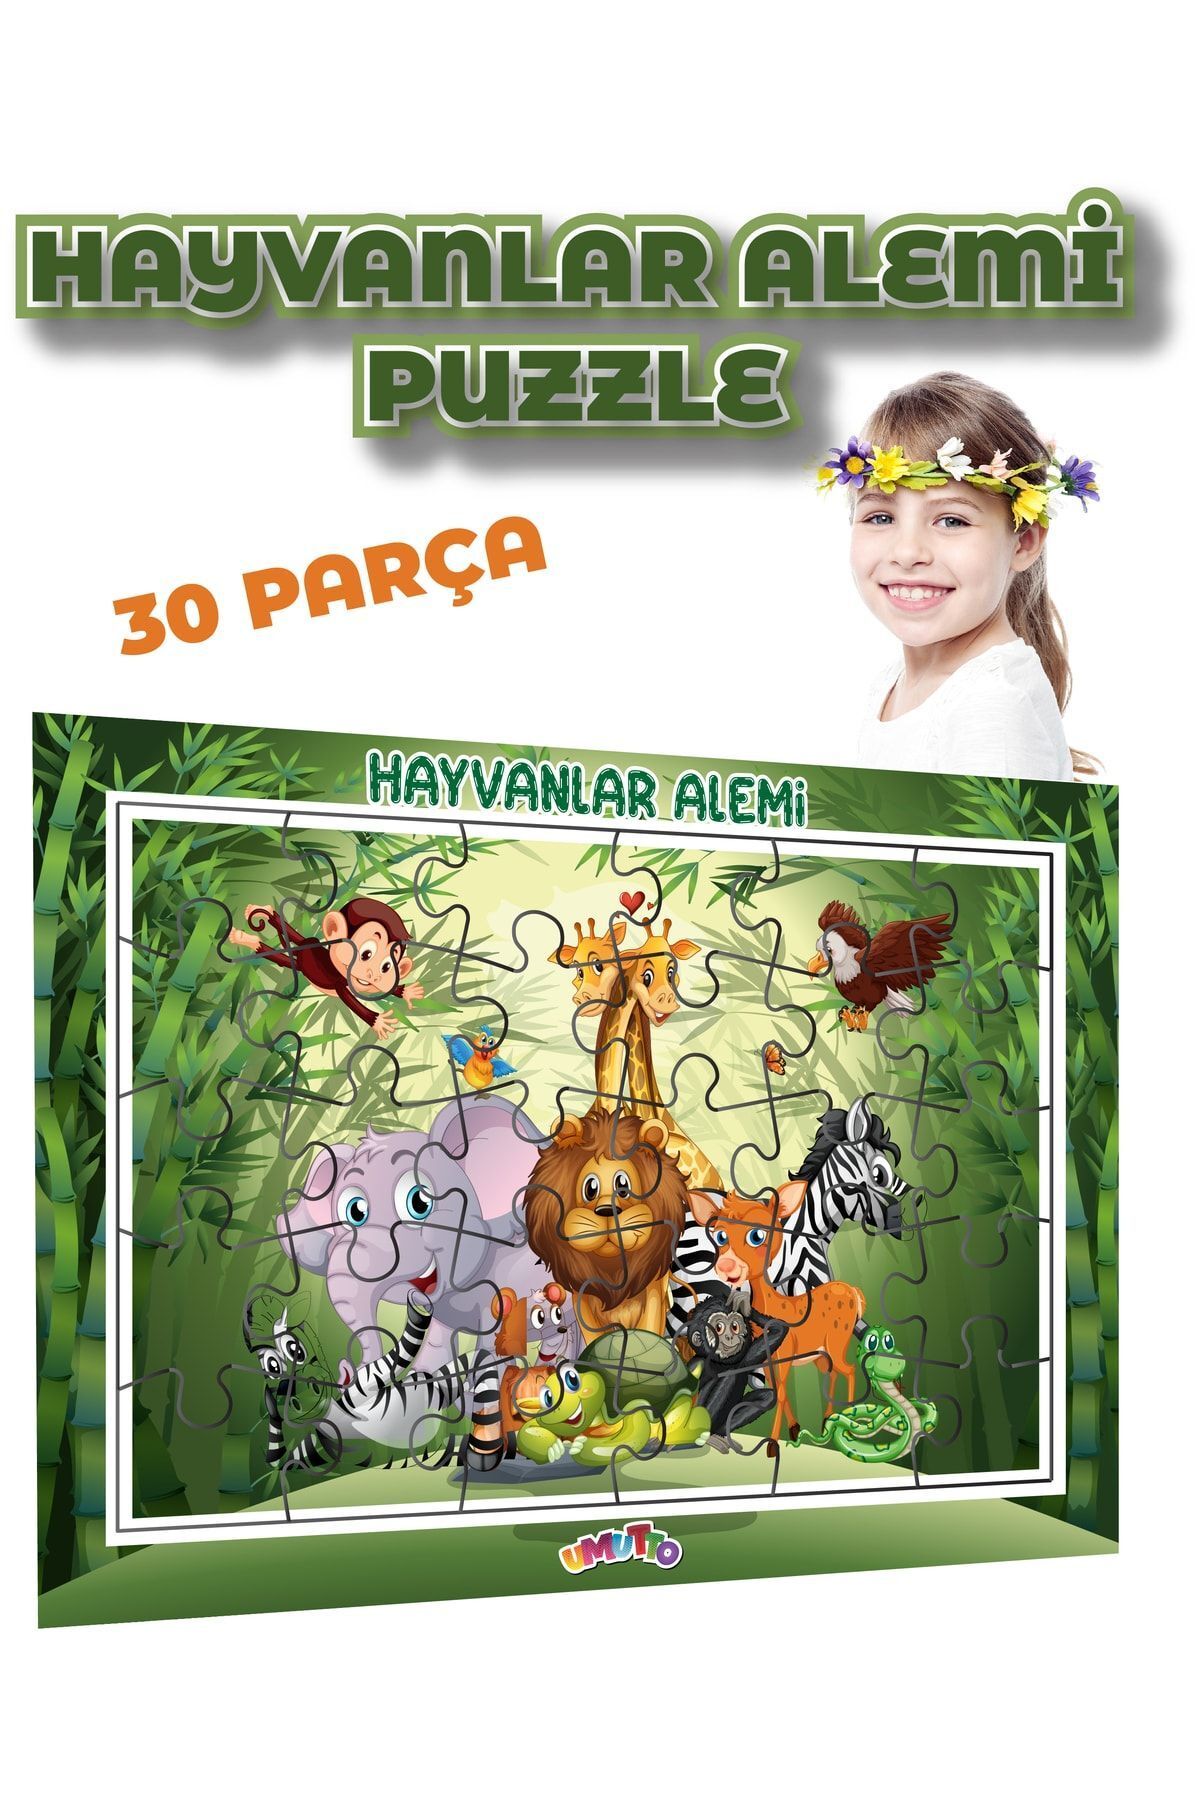 kidssan games Hayvanlar Frame Puzzle 30 Parça